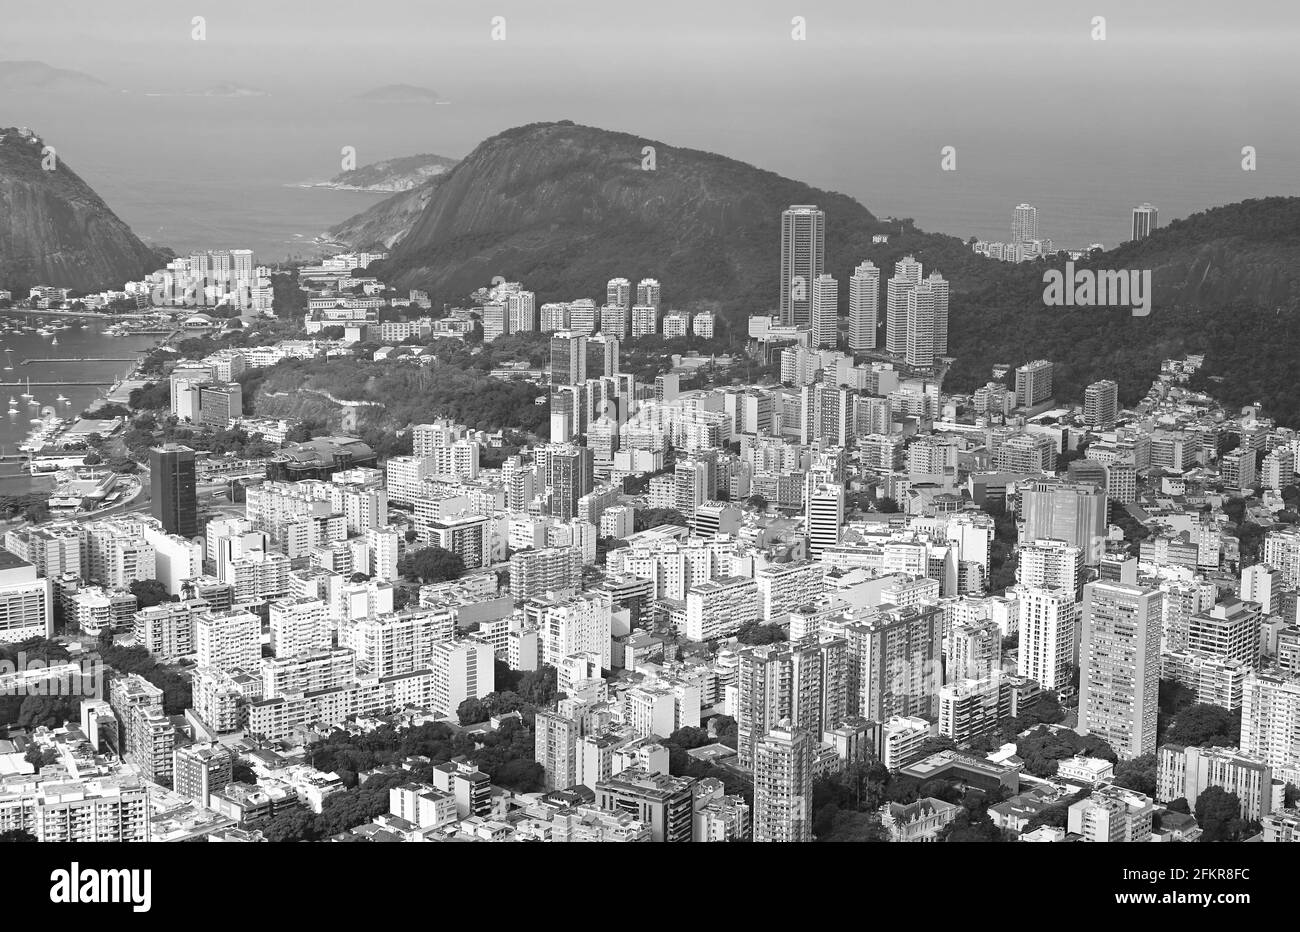 Vista aerea monocromatica del centro di Rio de Janeiro dalla collina di Colcovado, Rio de Janeiro, Brasile Foto Stock